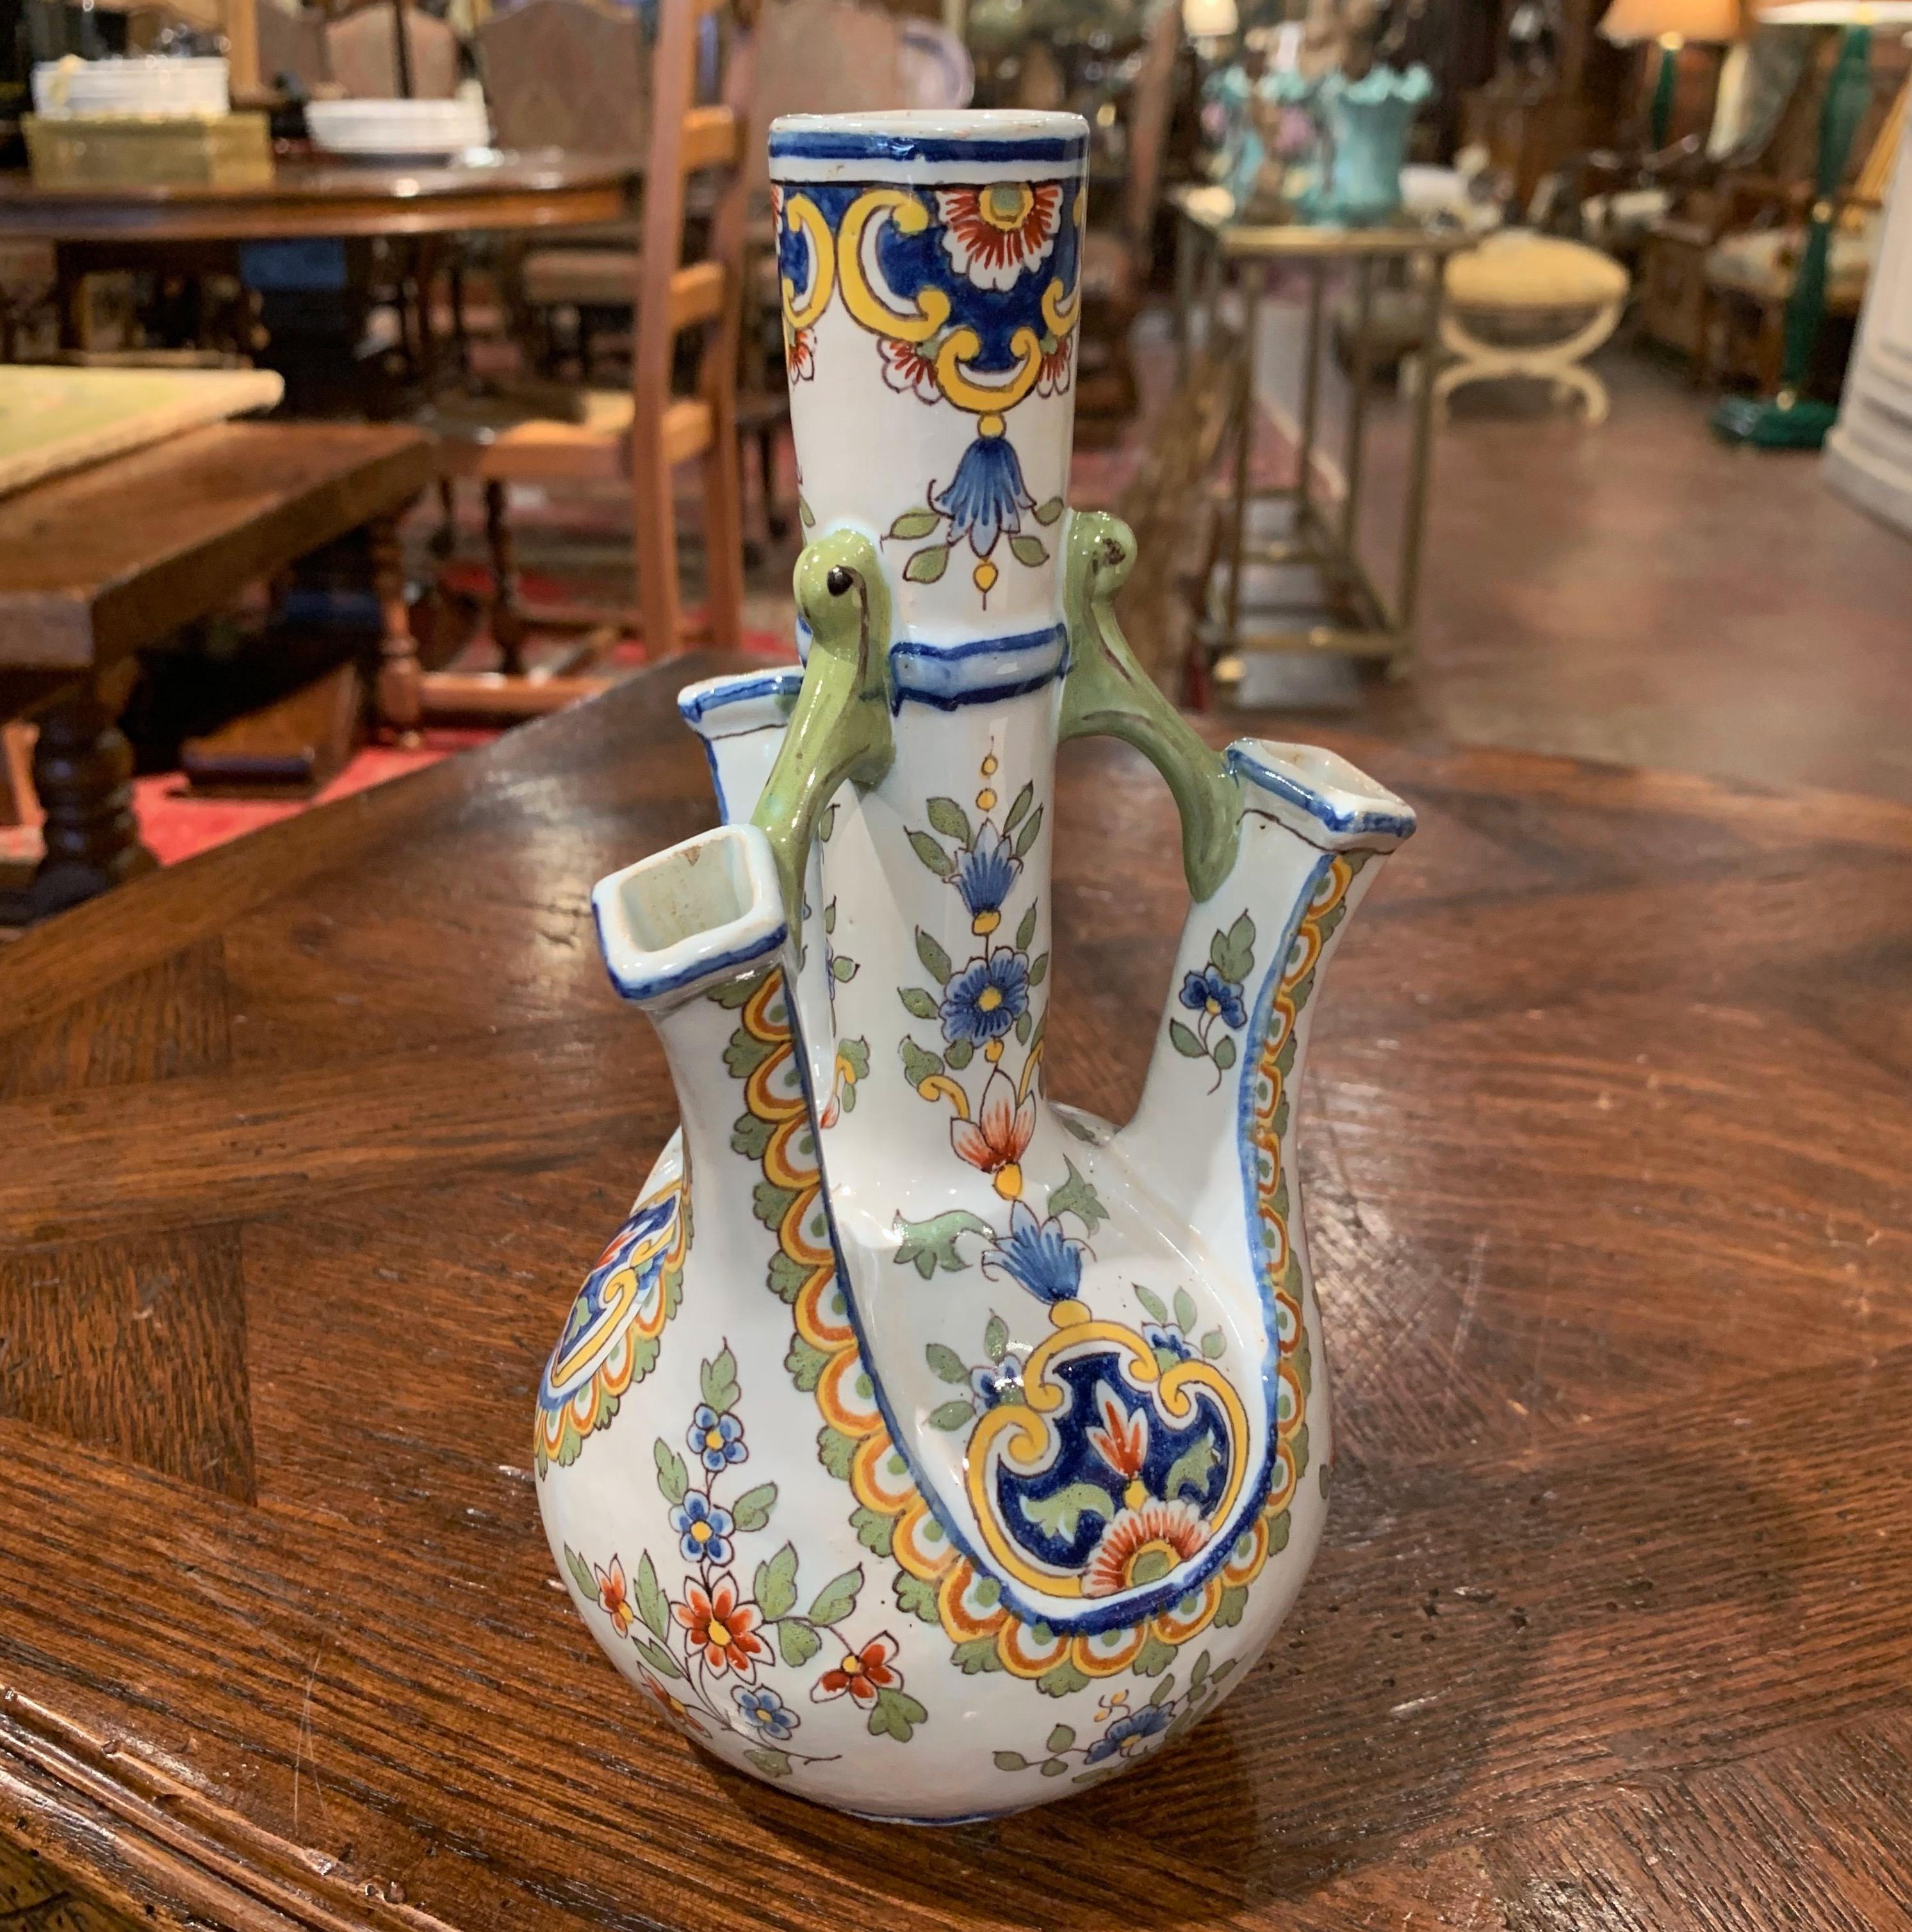 Stellen Sie diese interessante antike Keramikvase auf ein Regal oder eine Eingangskommode. Die klassische Vase wurde in der Normandie, Frankreich, um 1900 hergestellt, hat eine runde Form und vier Eingänge für Blumen, darunter einen größeren in der